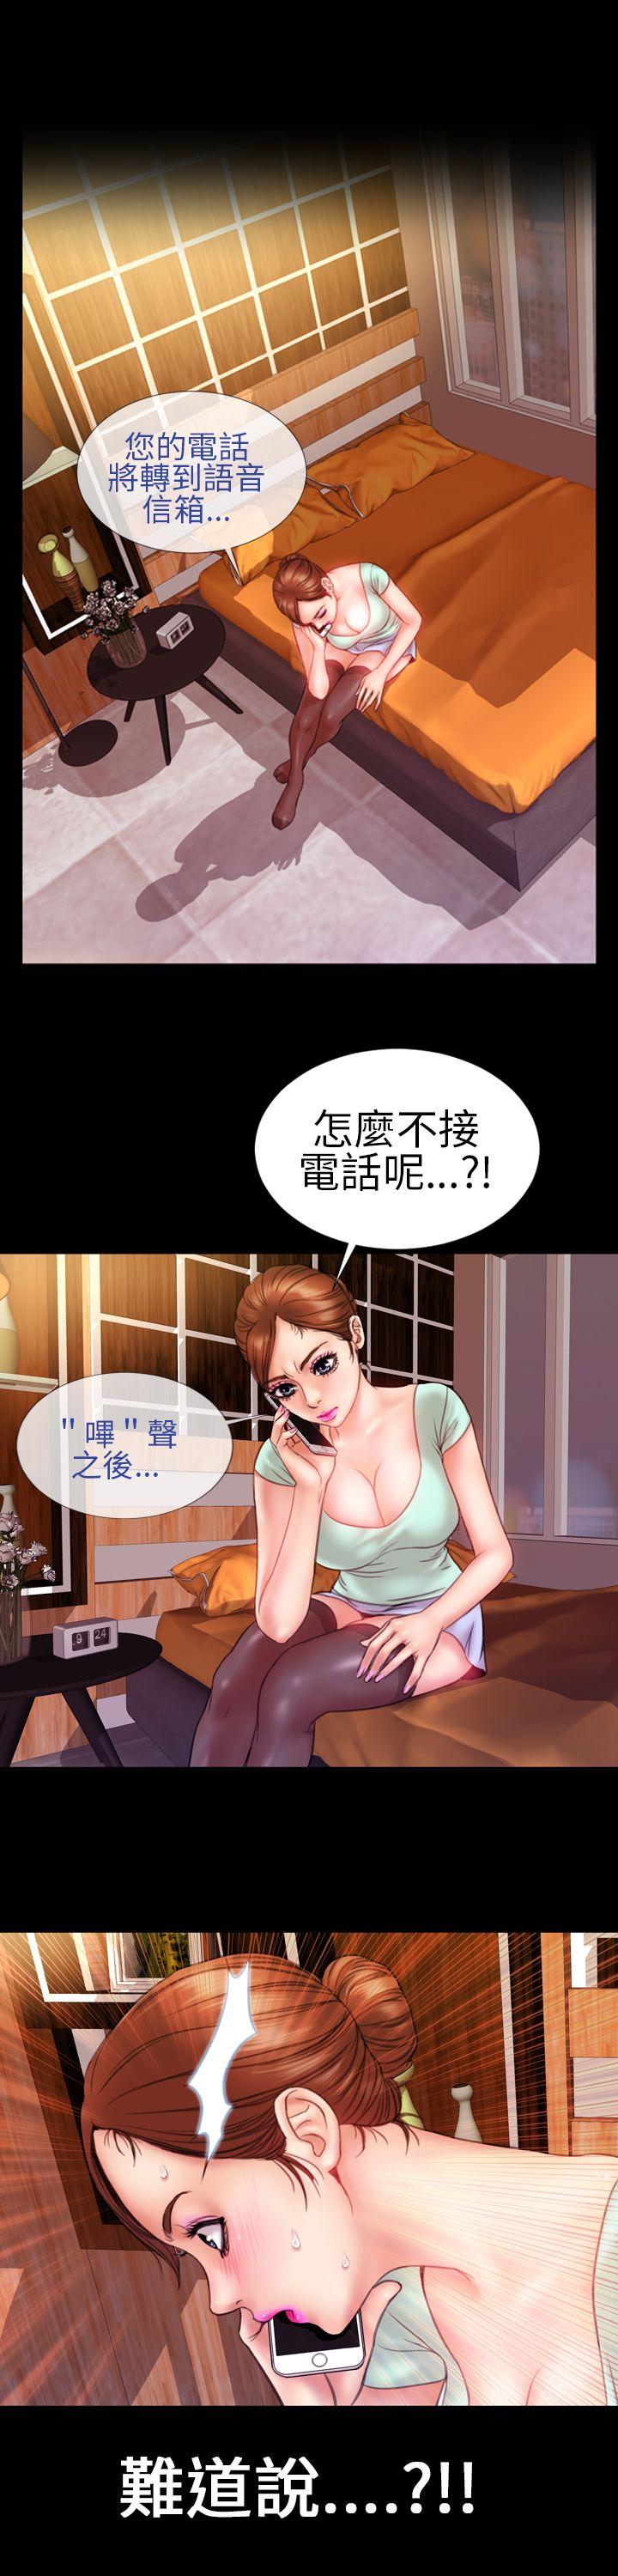 韩国污漫画 淫蕩的妻子們 第7话 21